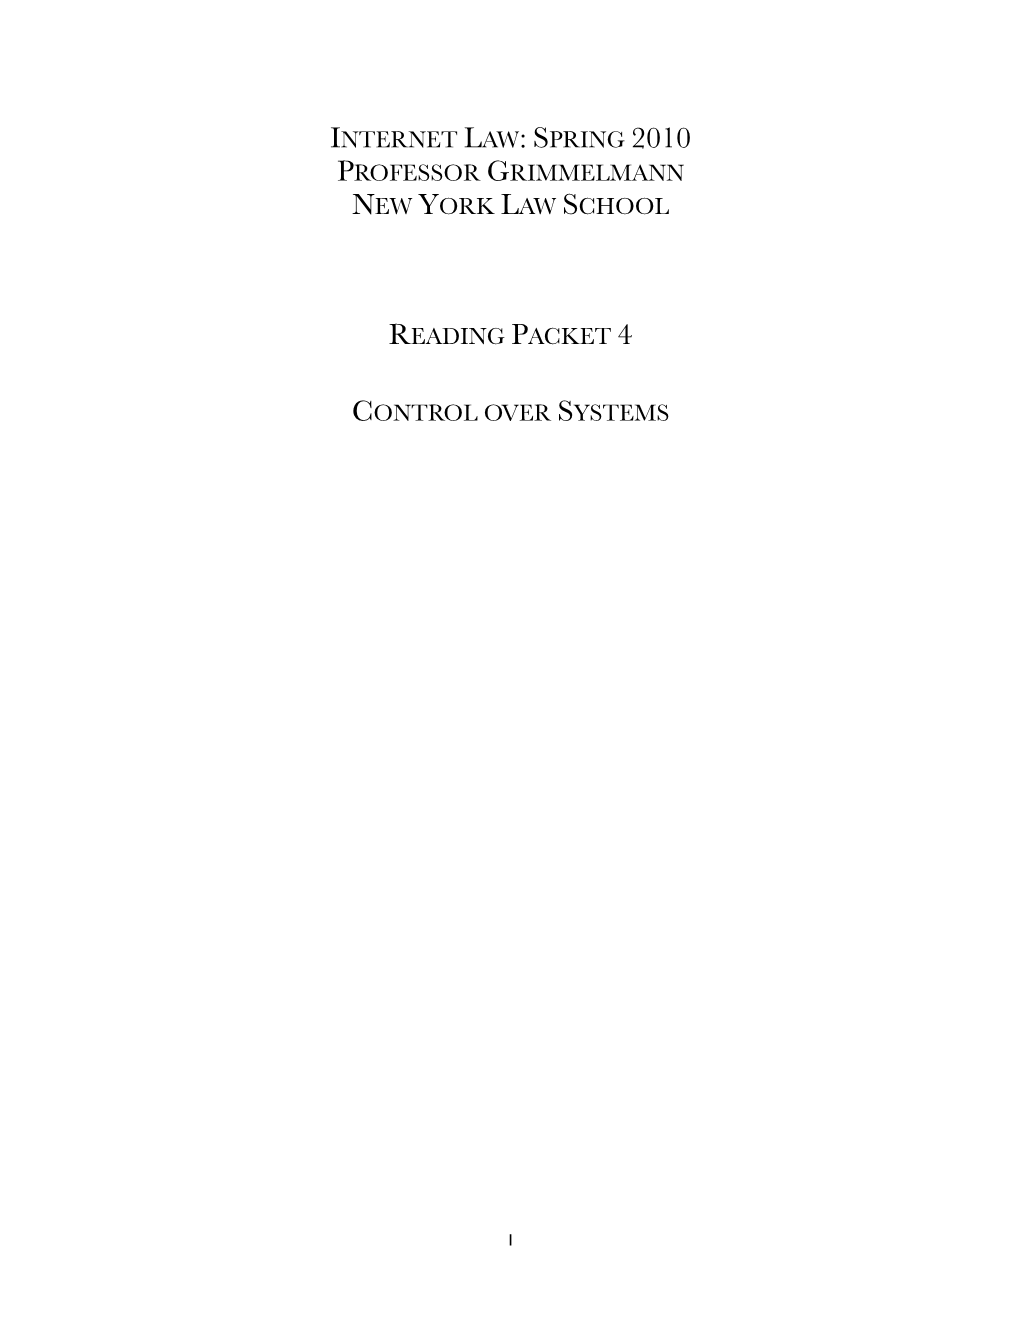 Internet Law Reader 4 Draft 3